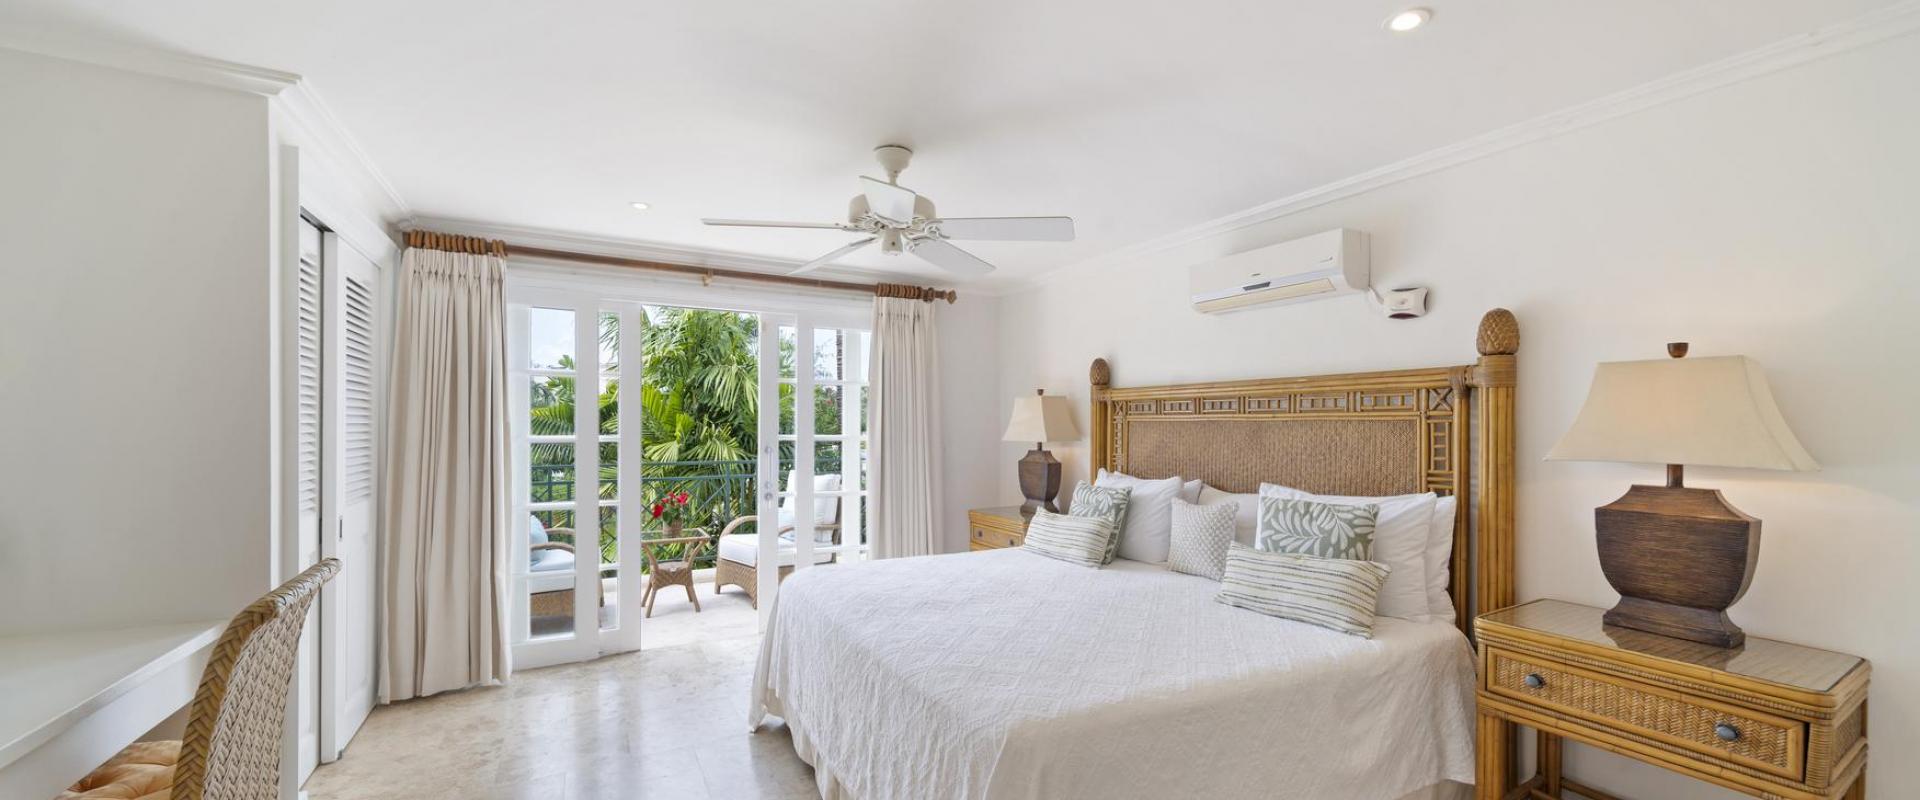 Hummingbird Villa Mullins Bay Barbados Bedroom 2 King Bed